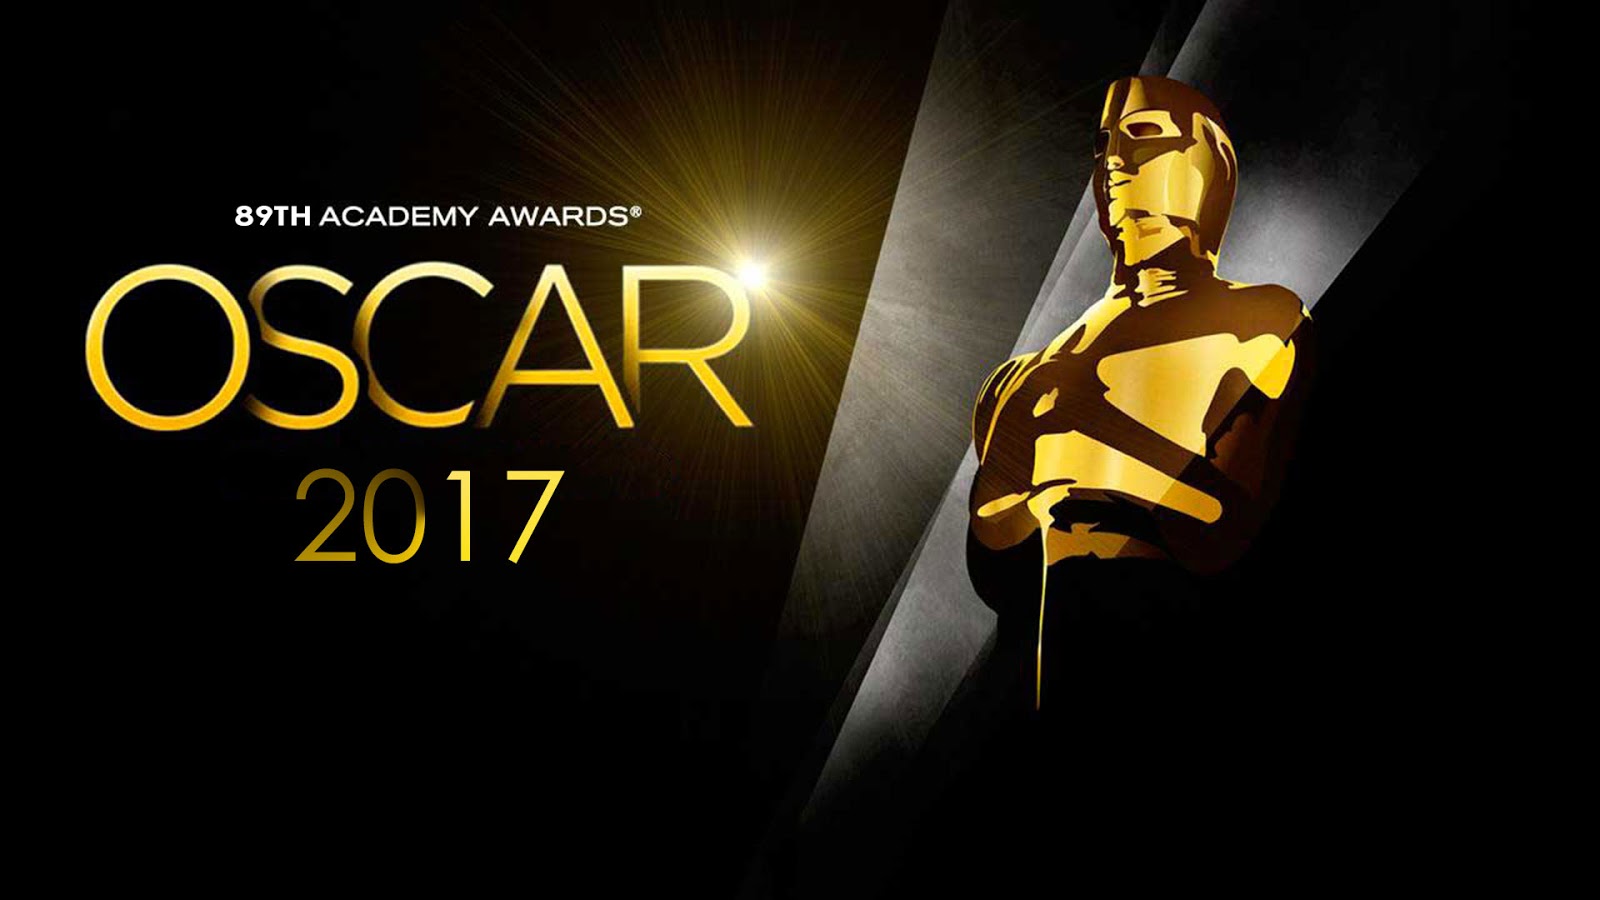 Oscars 2017 : Avec 14 nominations, La La Land égale le record